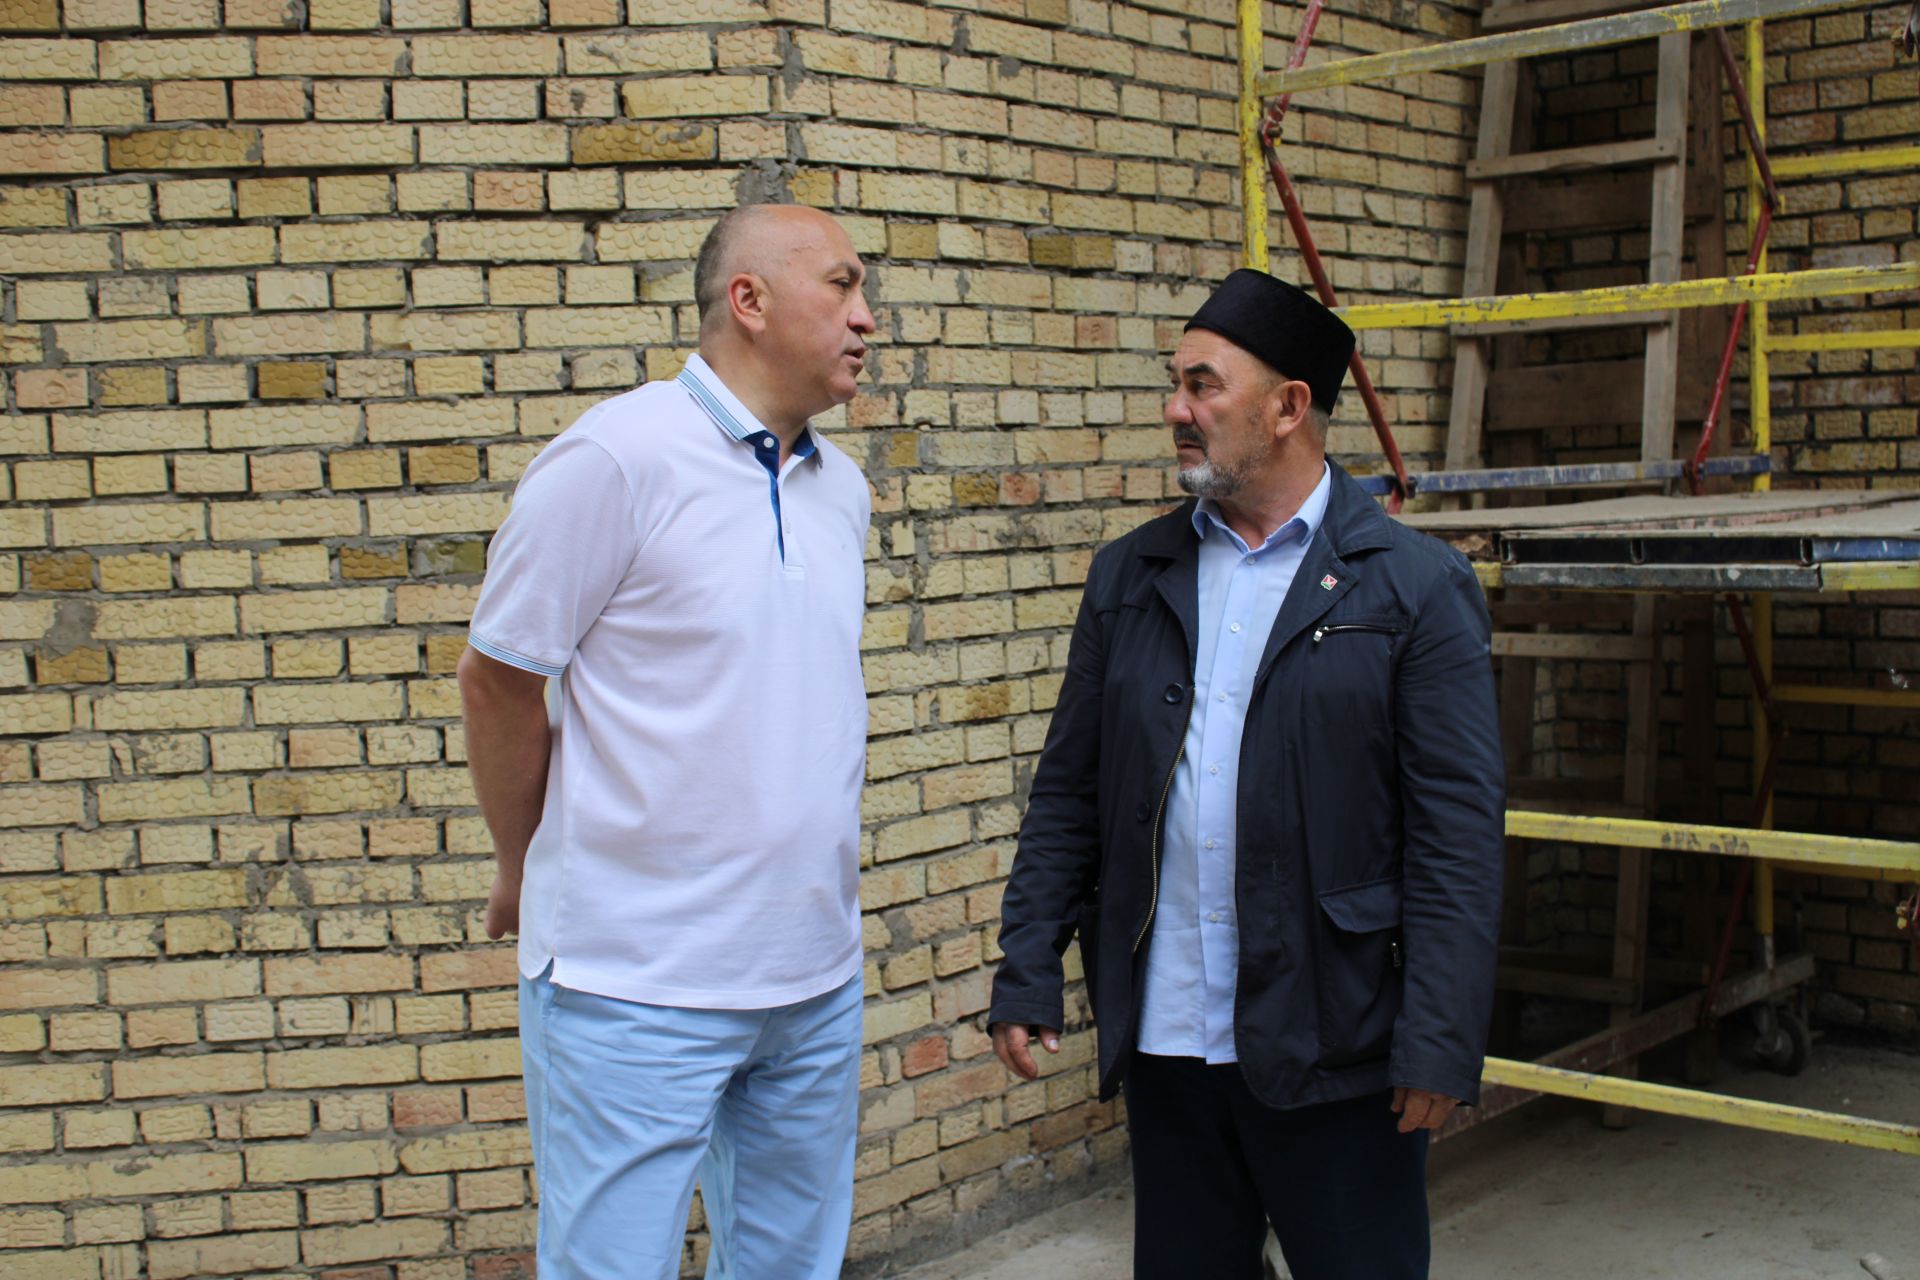 Глава Азнакаевского района принял участие в выездном совещании по строительству пристроя к Голубой мечети (Зэнгэр мэчет)